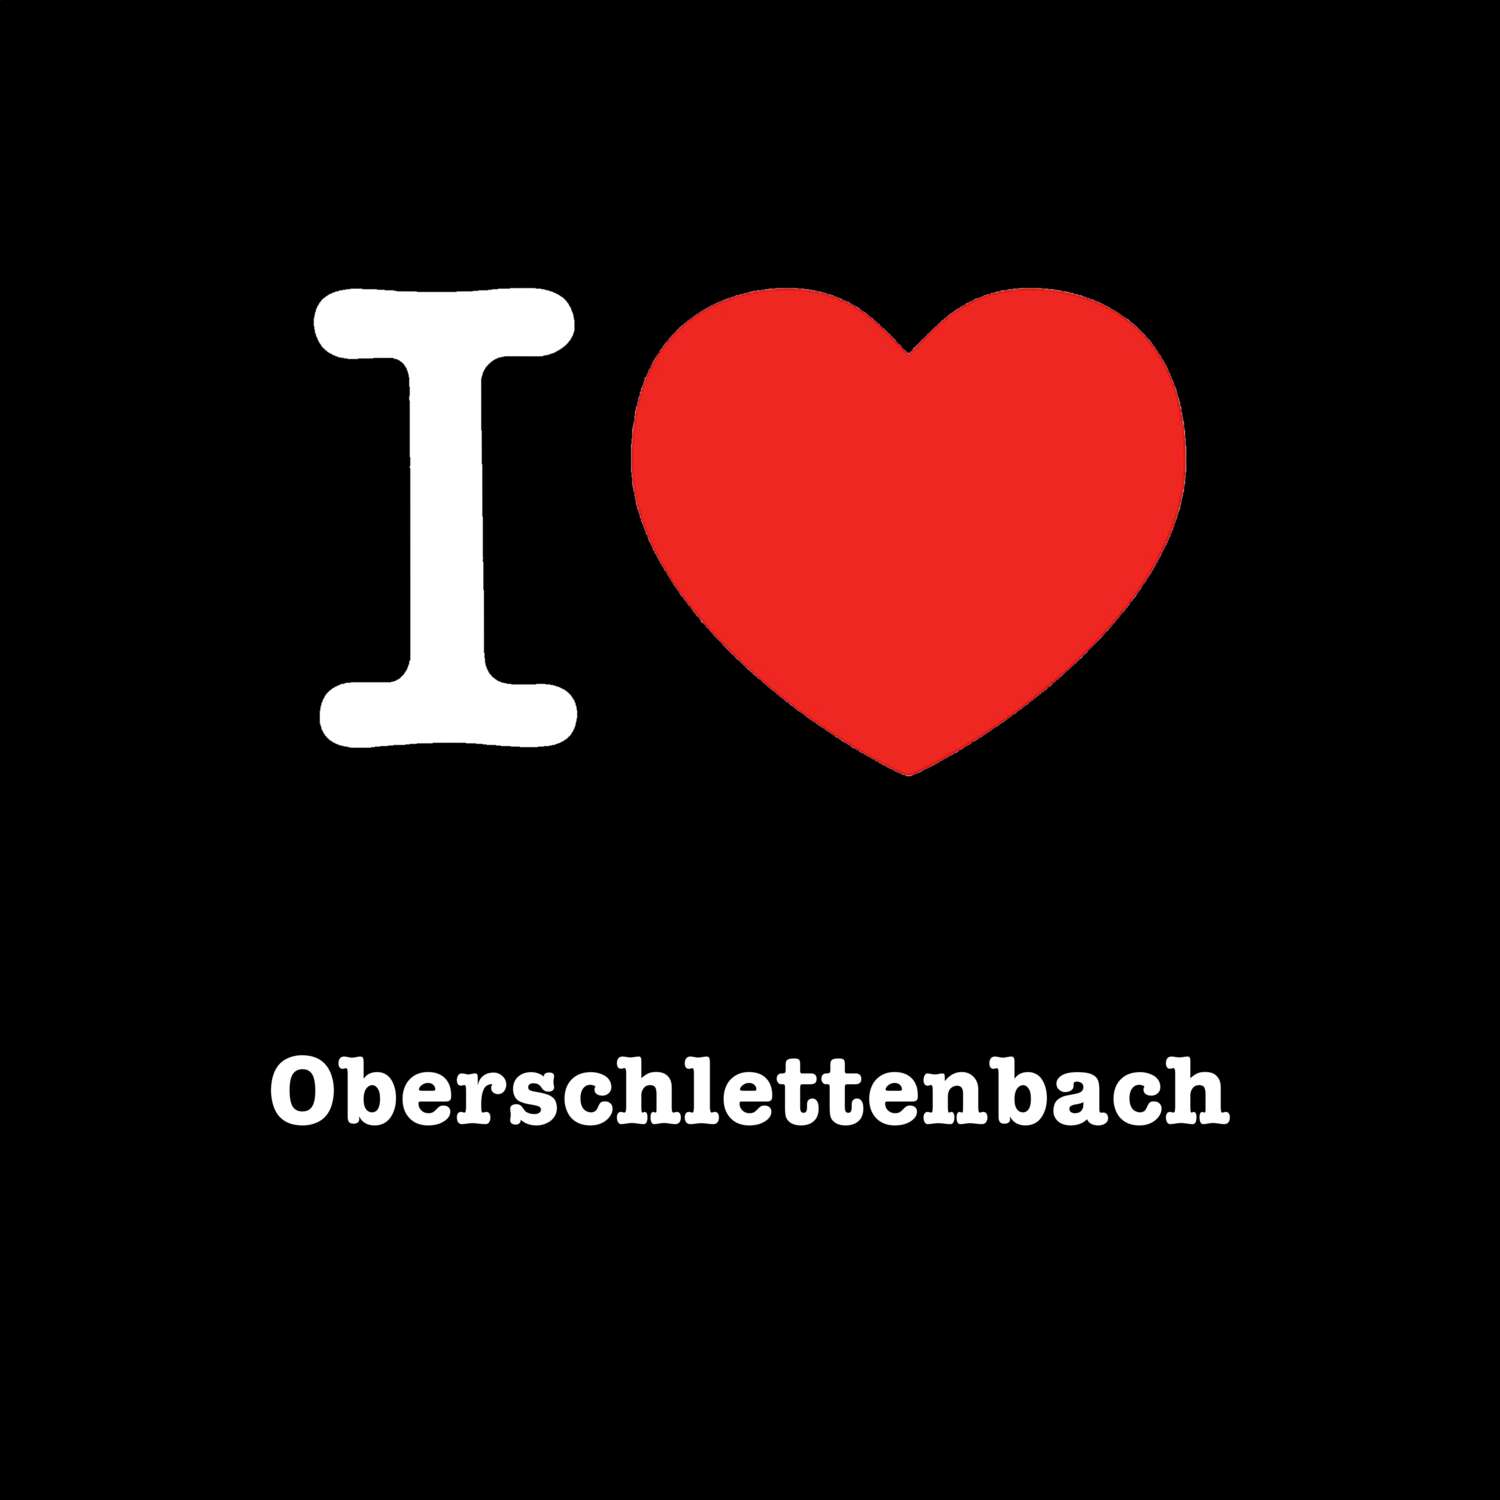 Oberschlettenbach T-Shirt »I love«